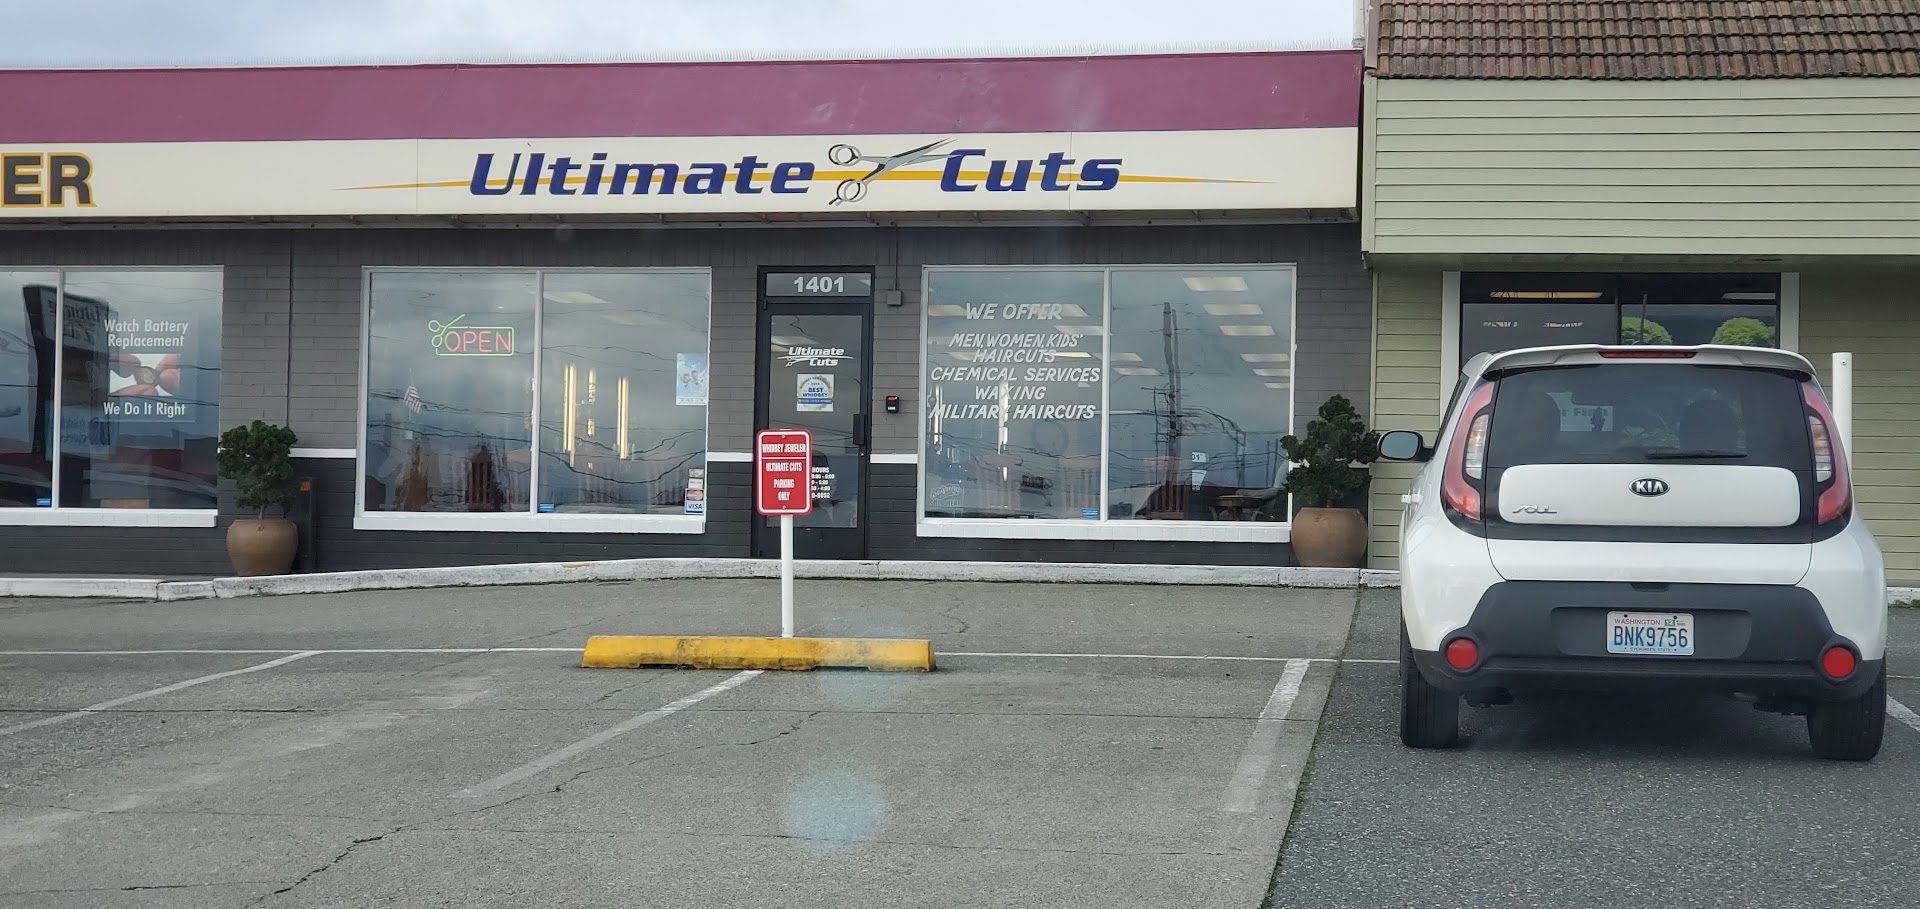 Ultimate Cuts